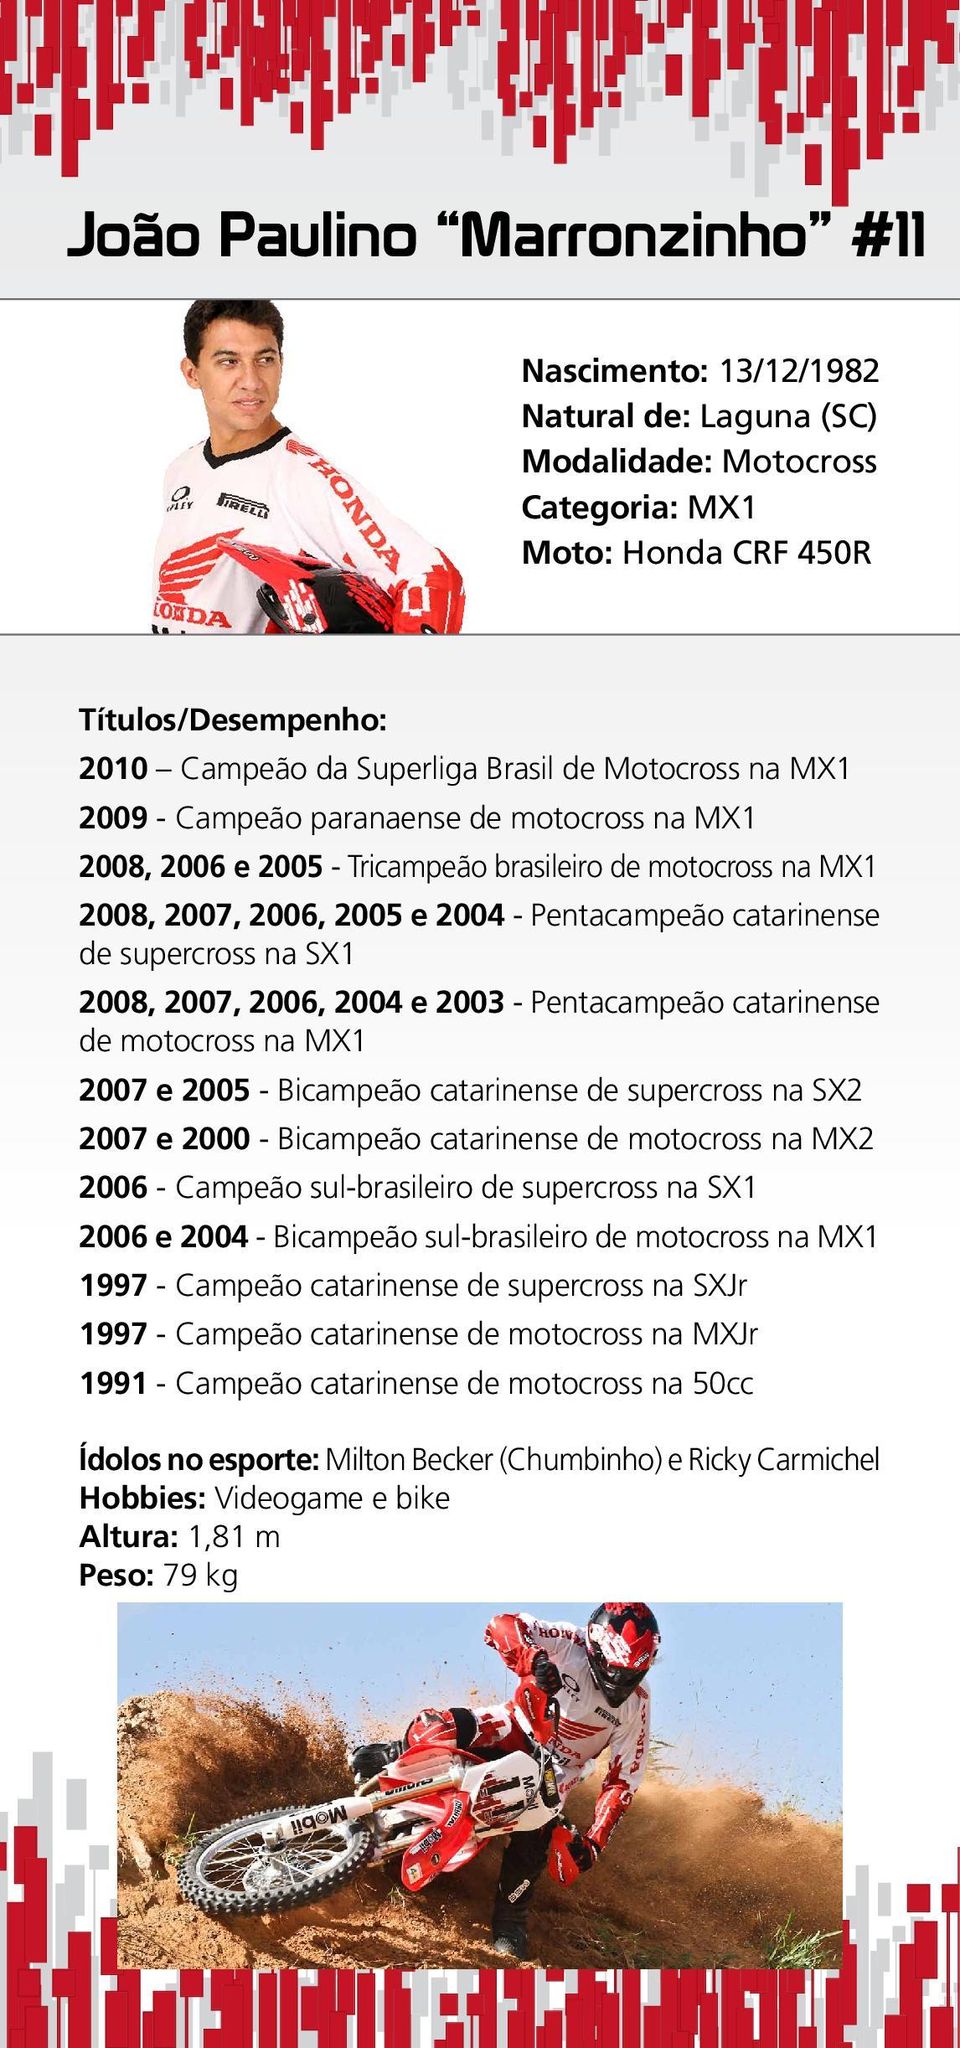 2007, 2006, 2004 e 2003 - Pentacampeão catarinense de motocross na MX1 2007 e 2005 - Bicampeão catarinense de supercross na SX2 2007 e 2000 - Bicampeão catarinense de motocross na MX2 2006 - Campeão